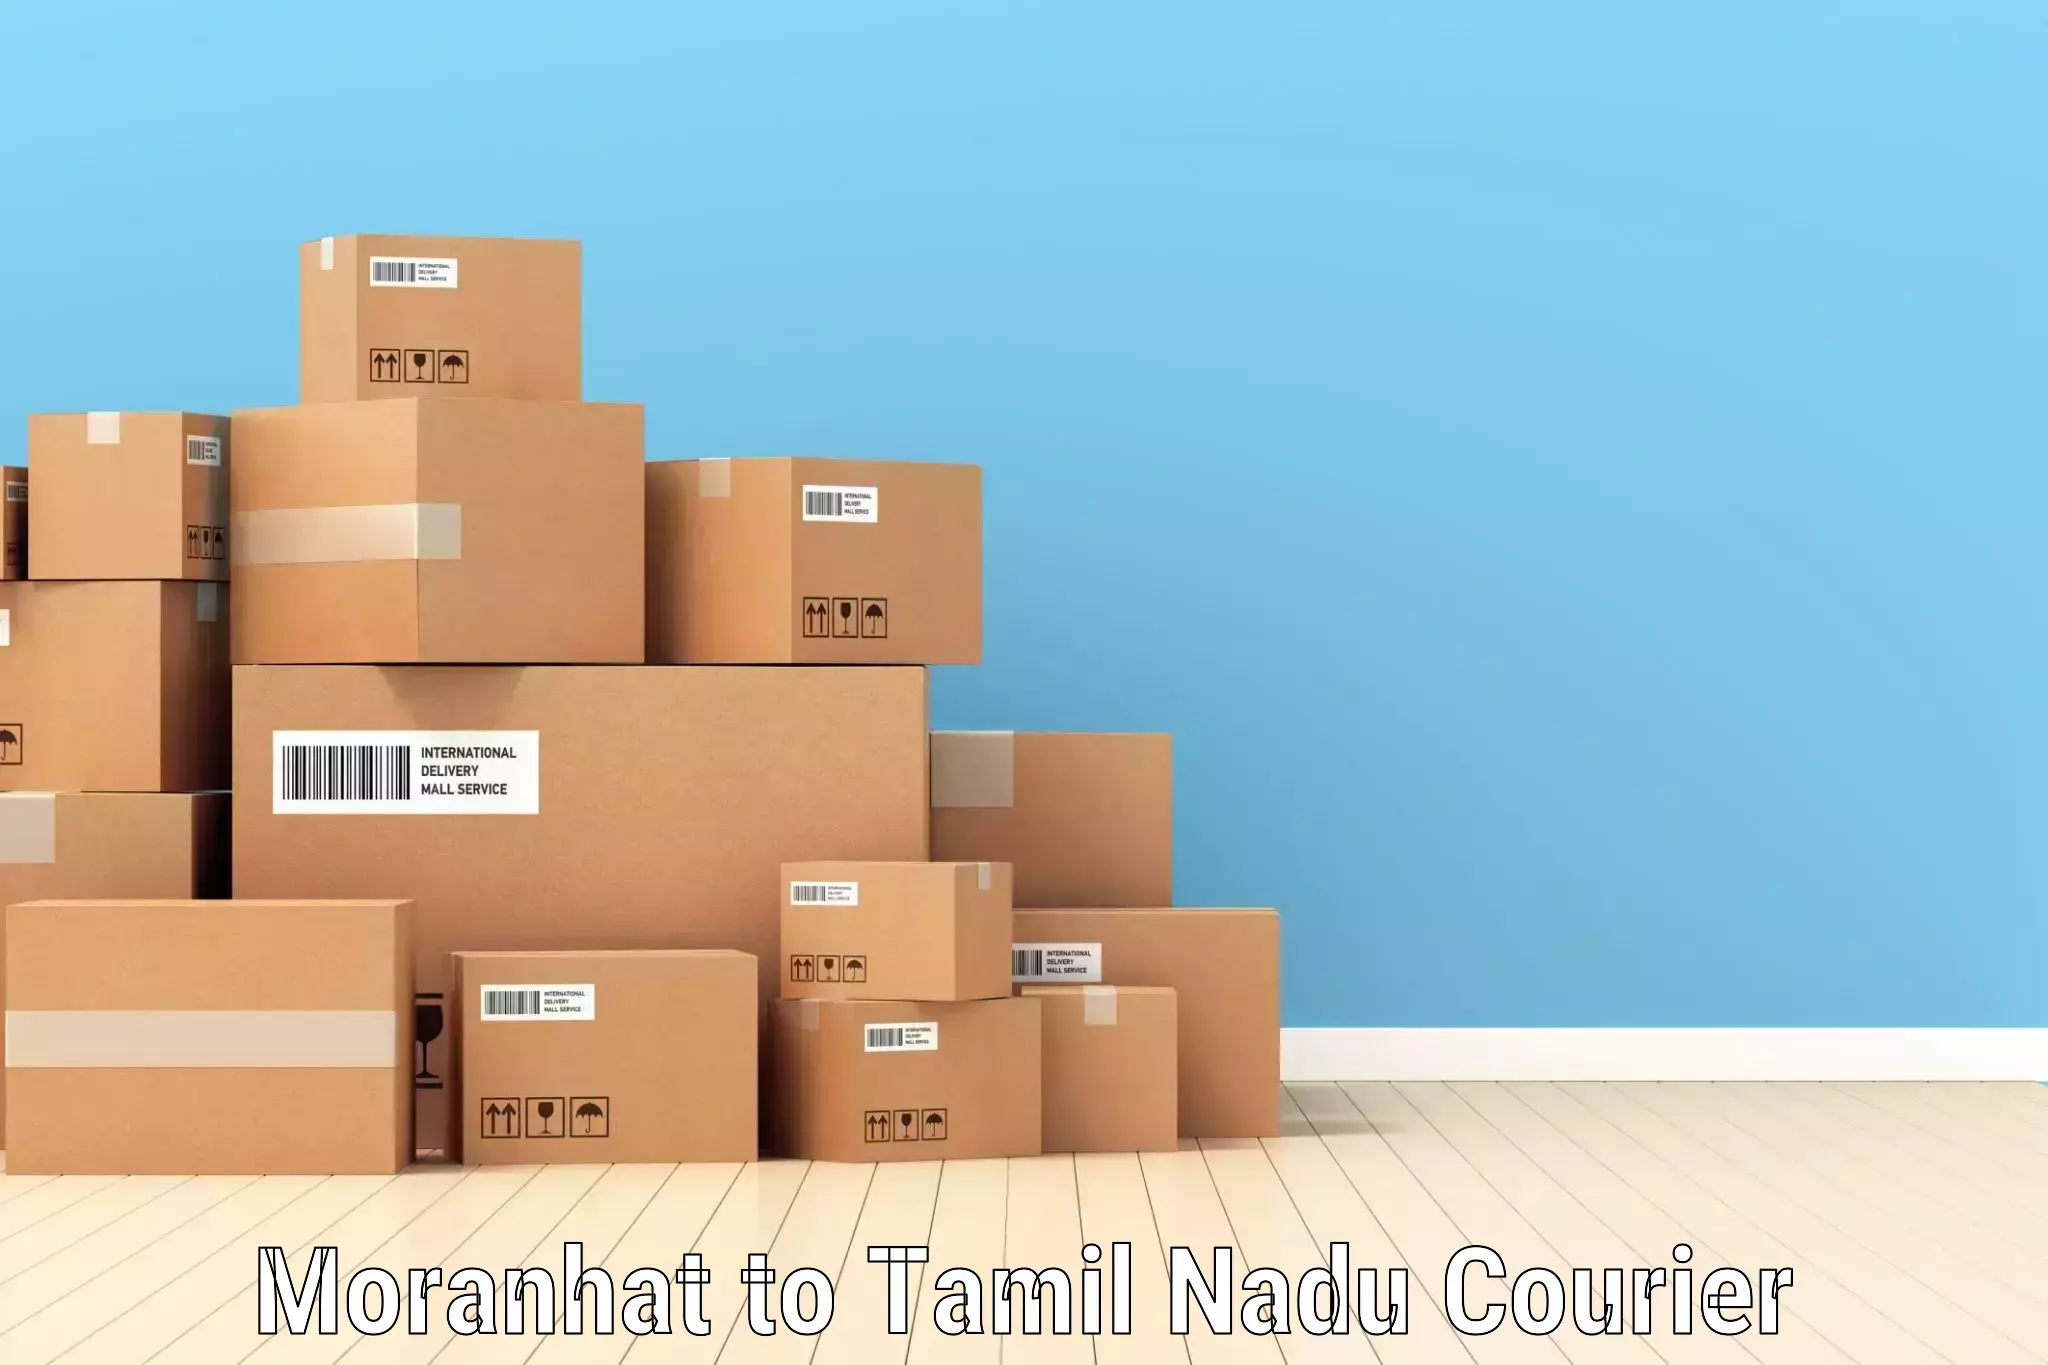 Global shipping networks Moranhat to Thiruvadanai